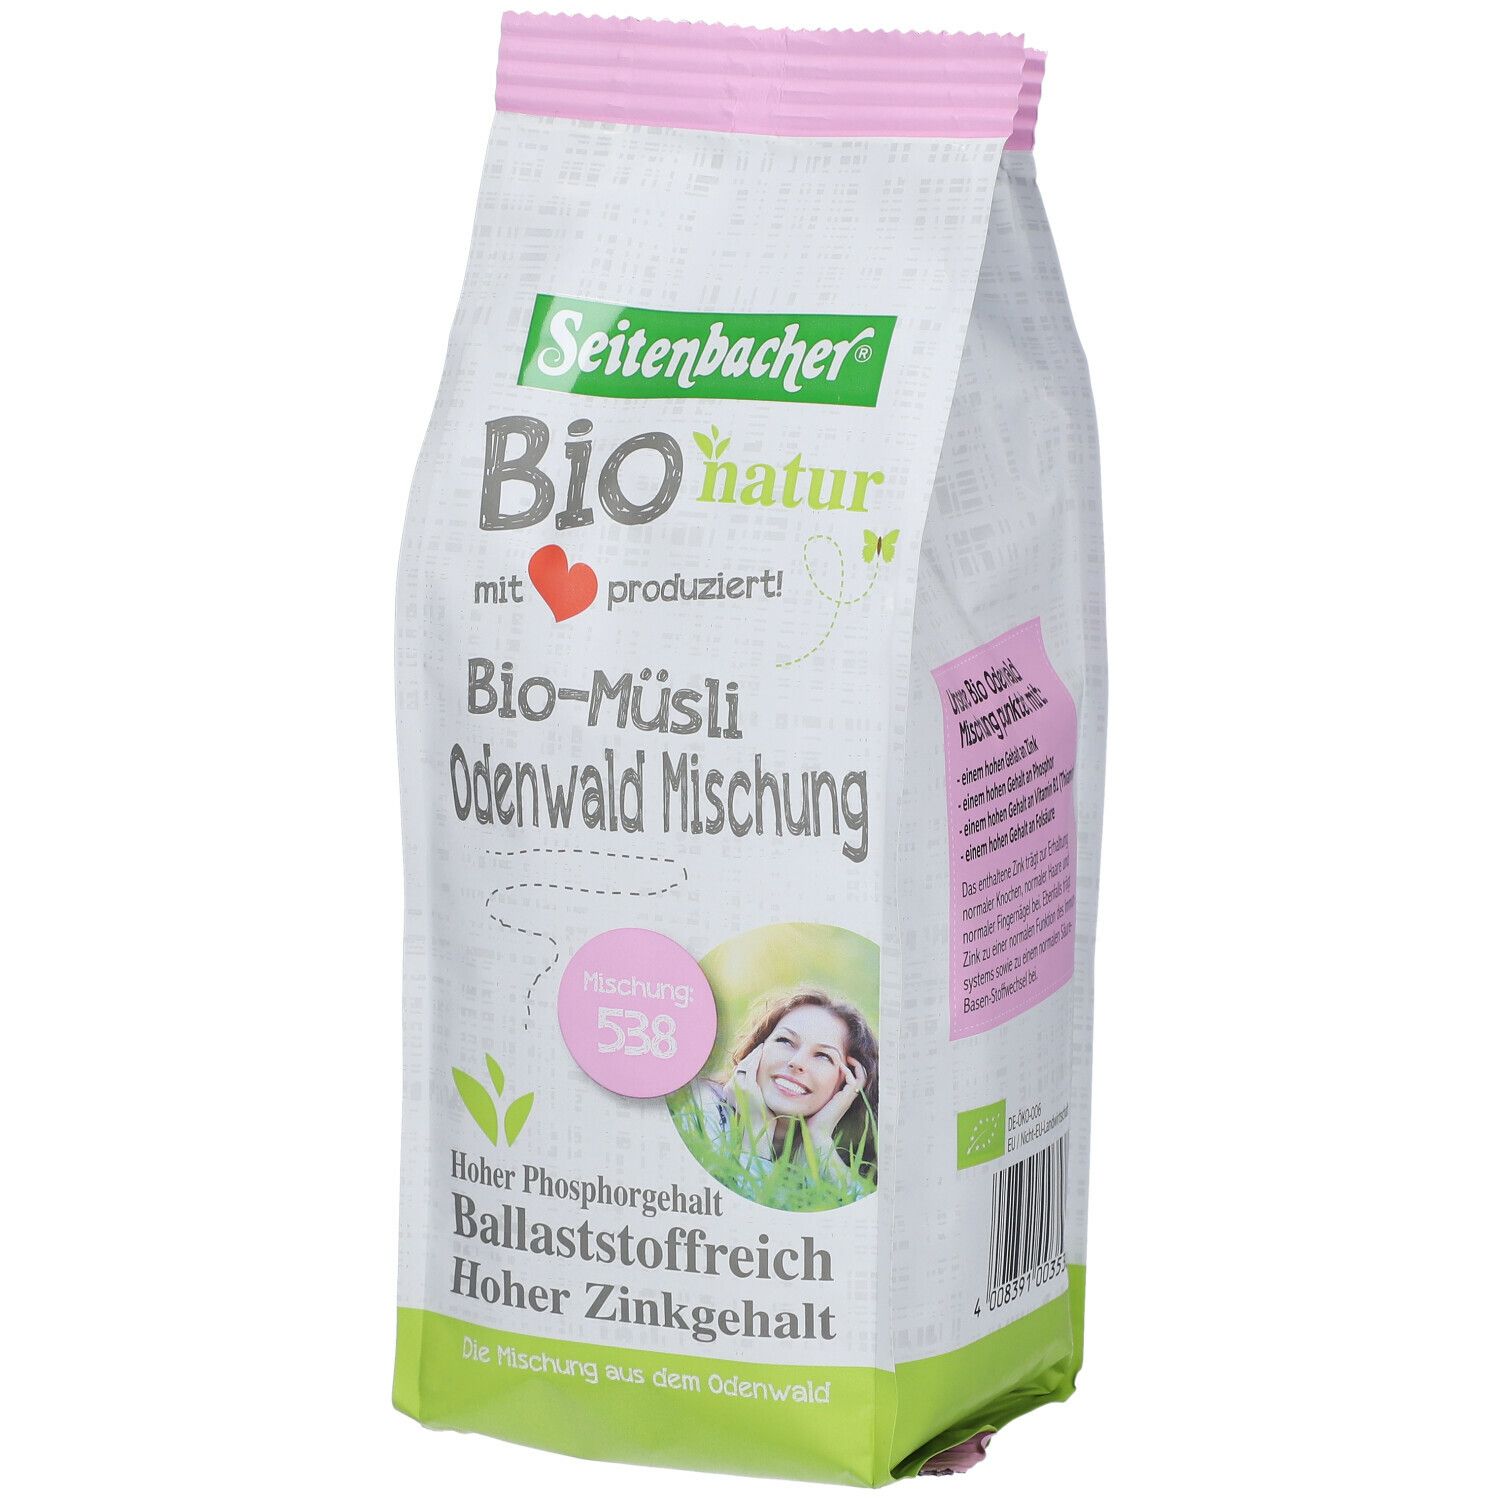 Seitenbacher® Bio natur Bio Müsli Odenwald Mischung